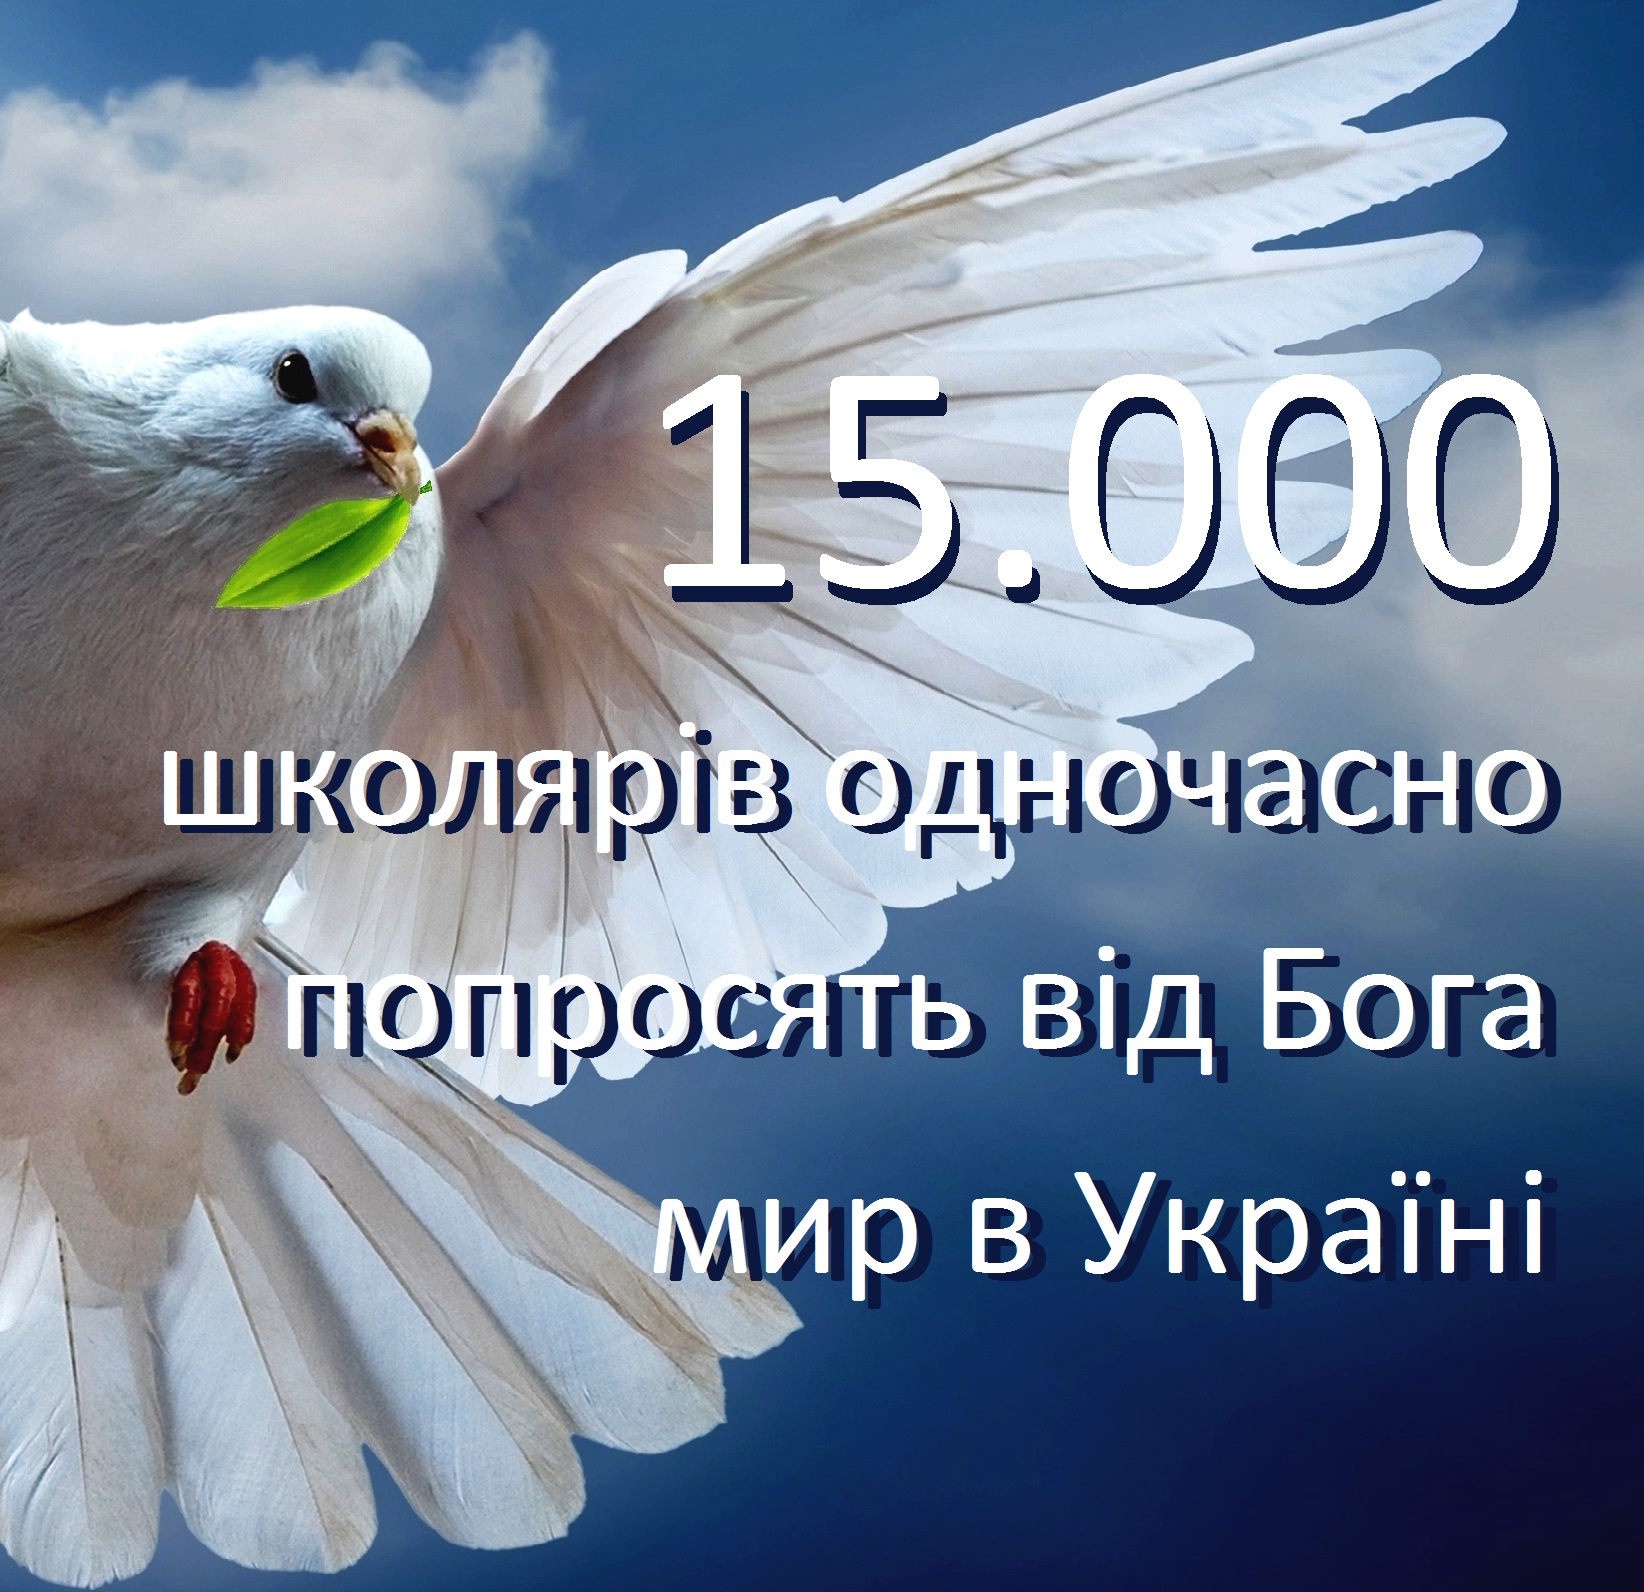 Як ми вже повідомляли, 5 квітня о 9.40 всі школярі Виноградівського району одночасно попросять у Бога мир в Україні.